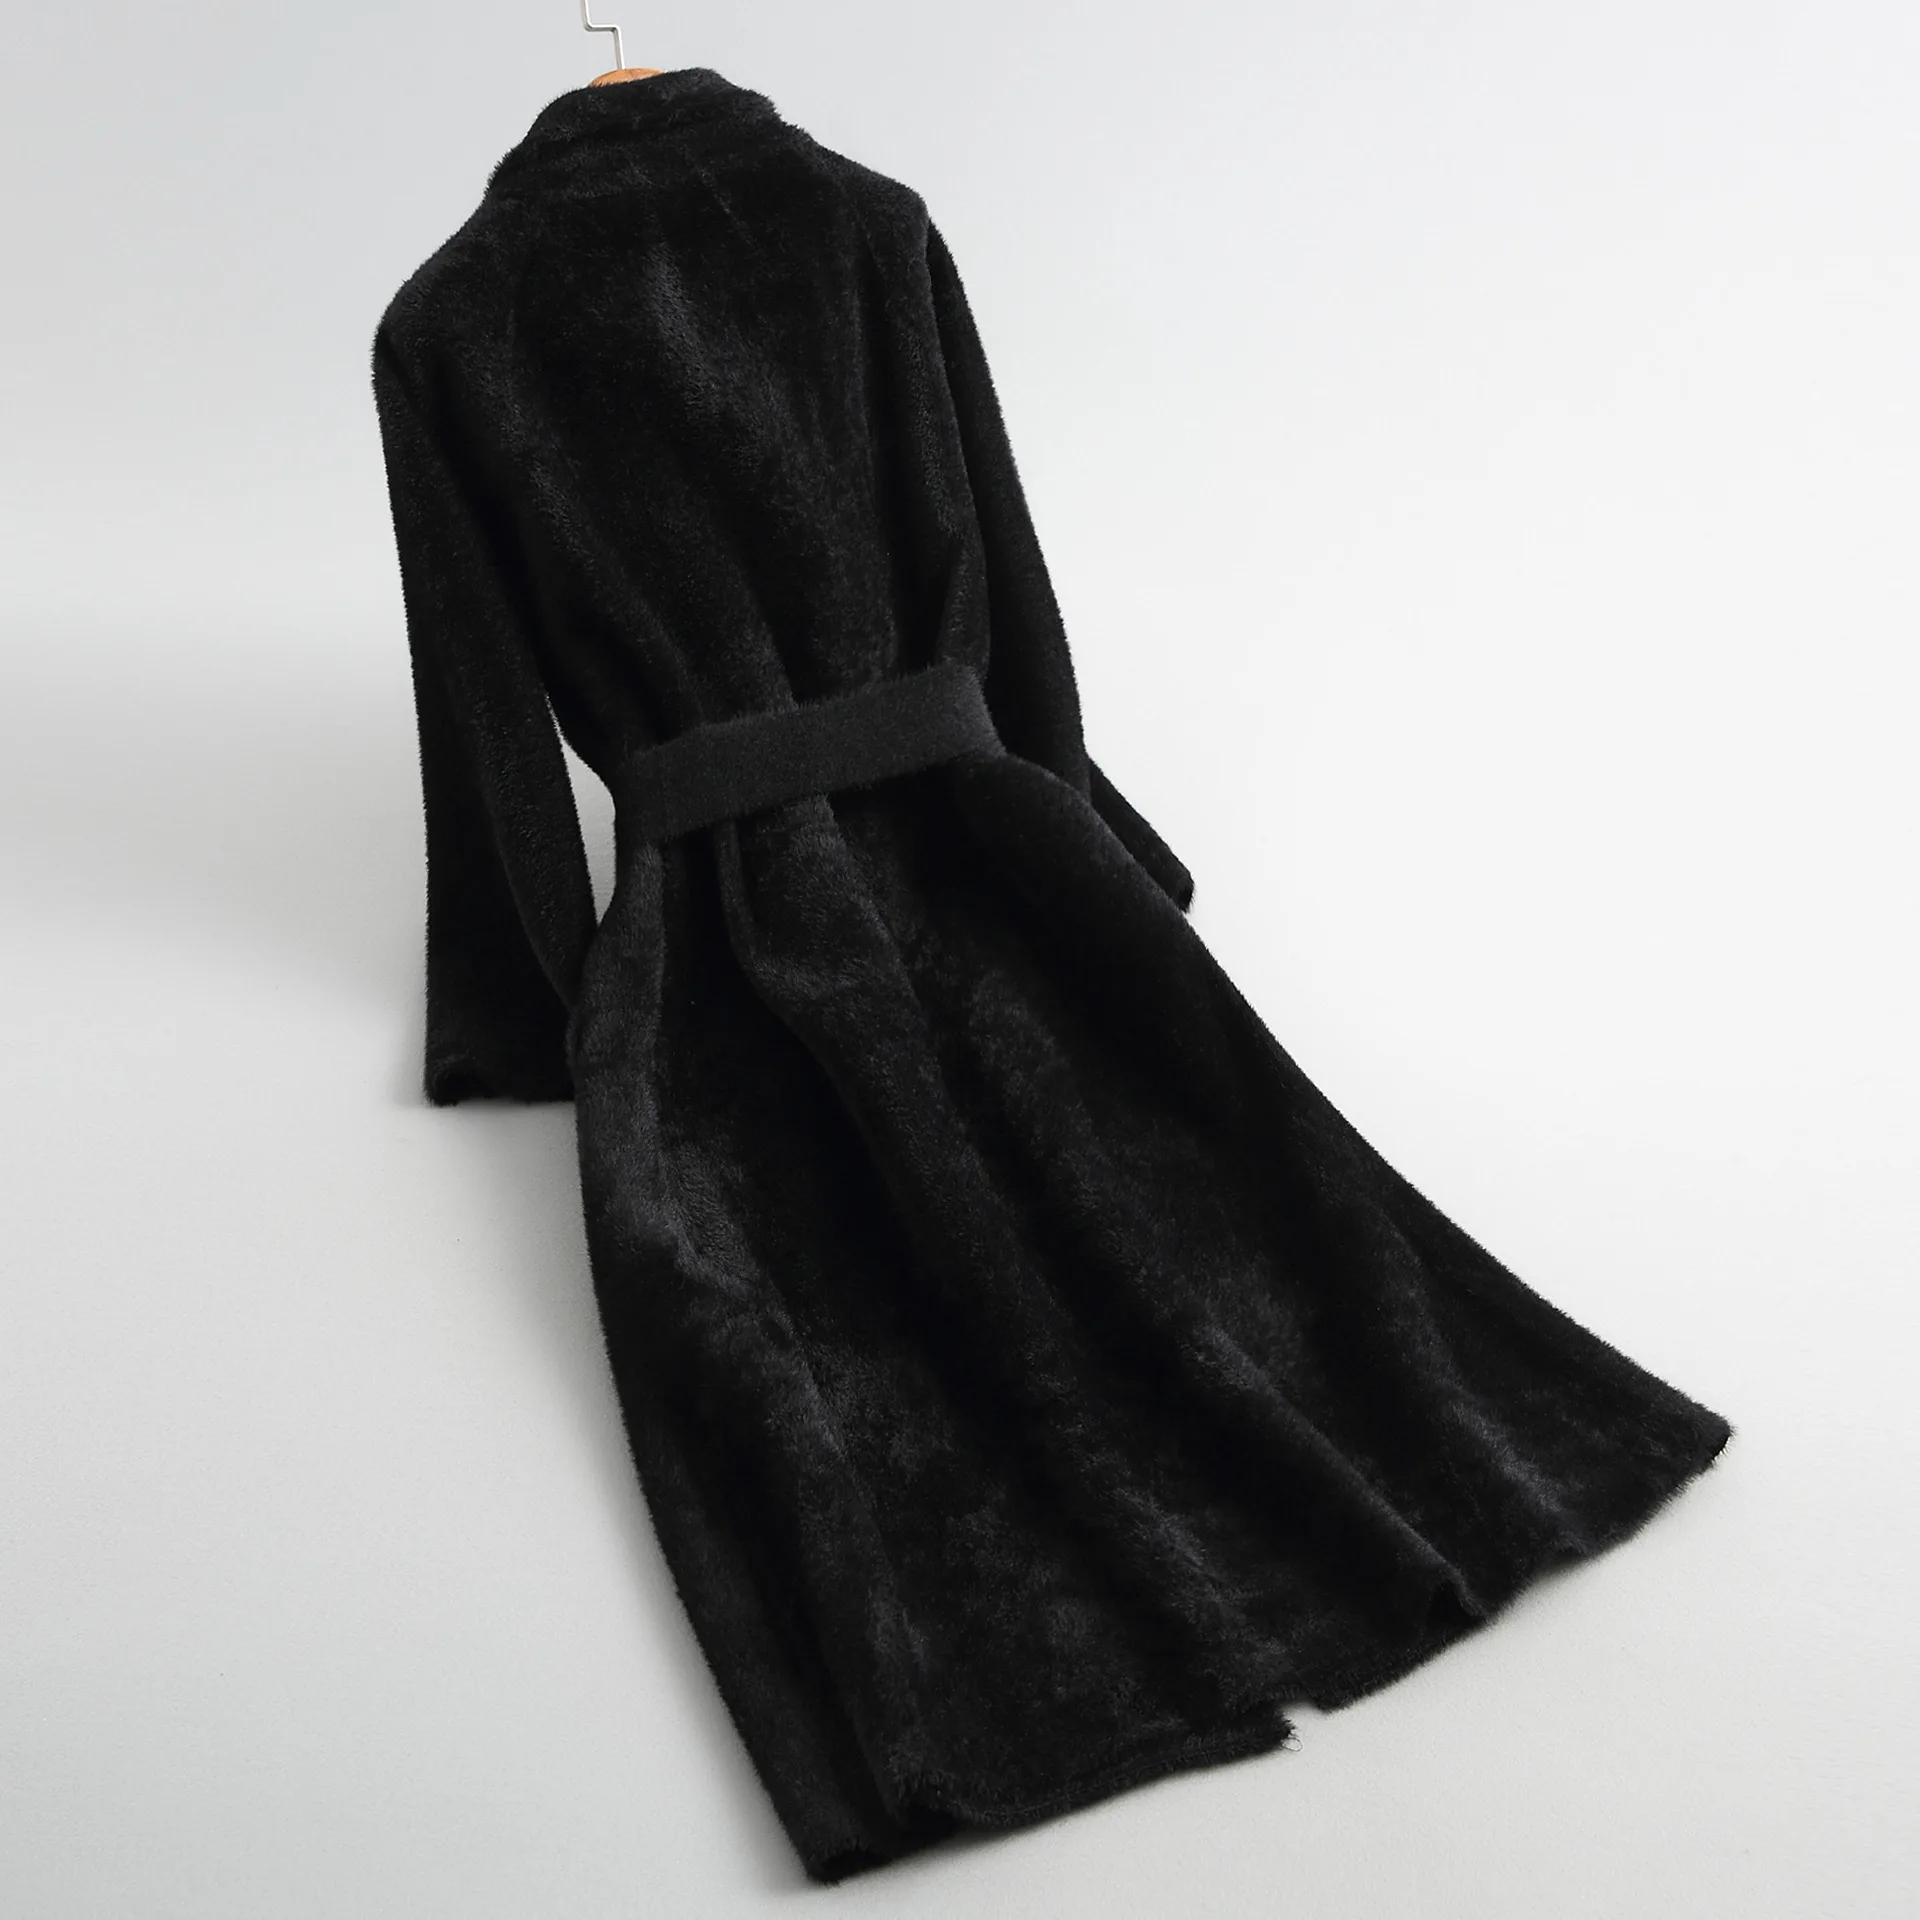 INNASOFAN пальто женское осень-зима алмазно-бархатное пальто Евро-американская мода теплое вязаное пальто с карманами в отложном воротнике